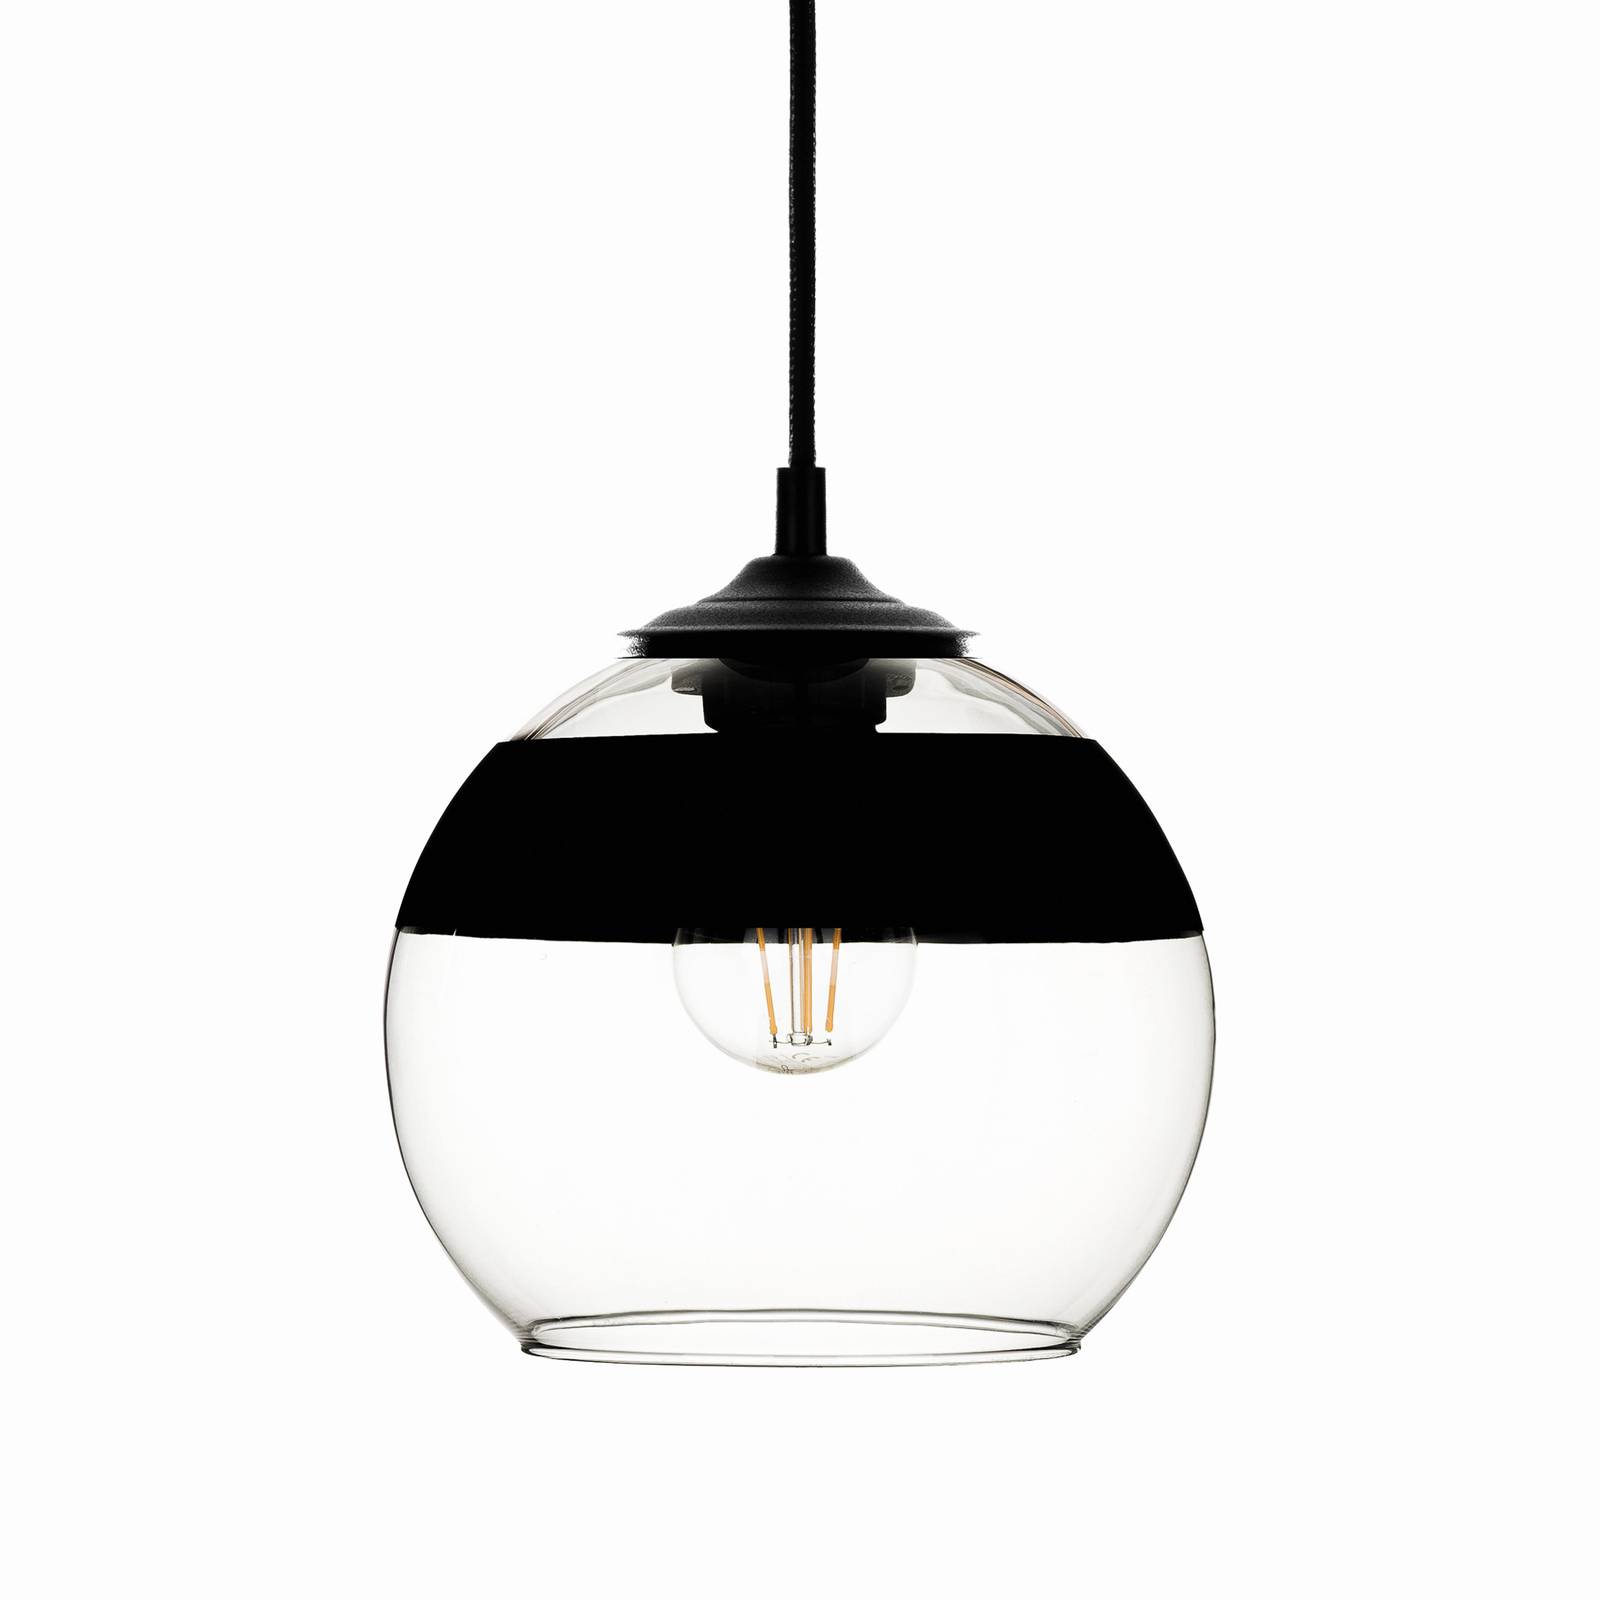 Solbika Lighting Závěsná lampa Monochrome Flash čirá/černá Ø 20cm